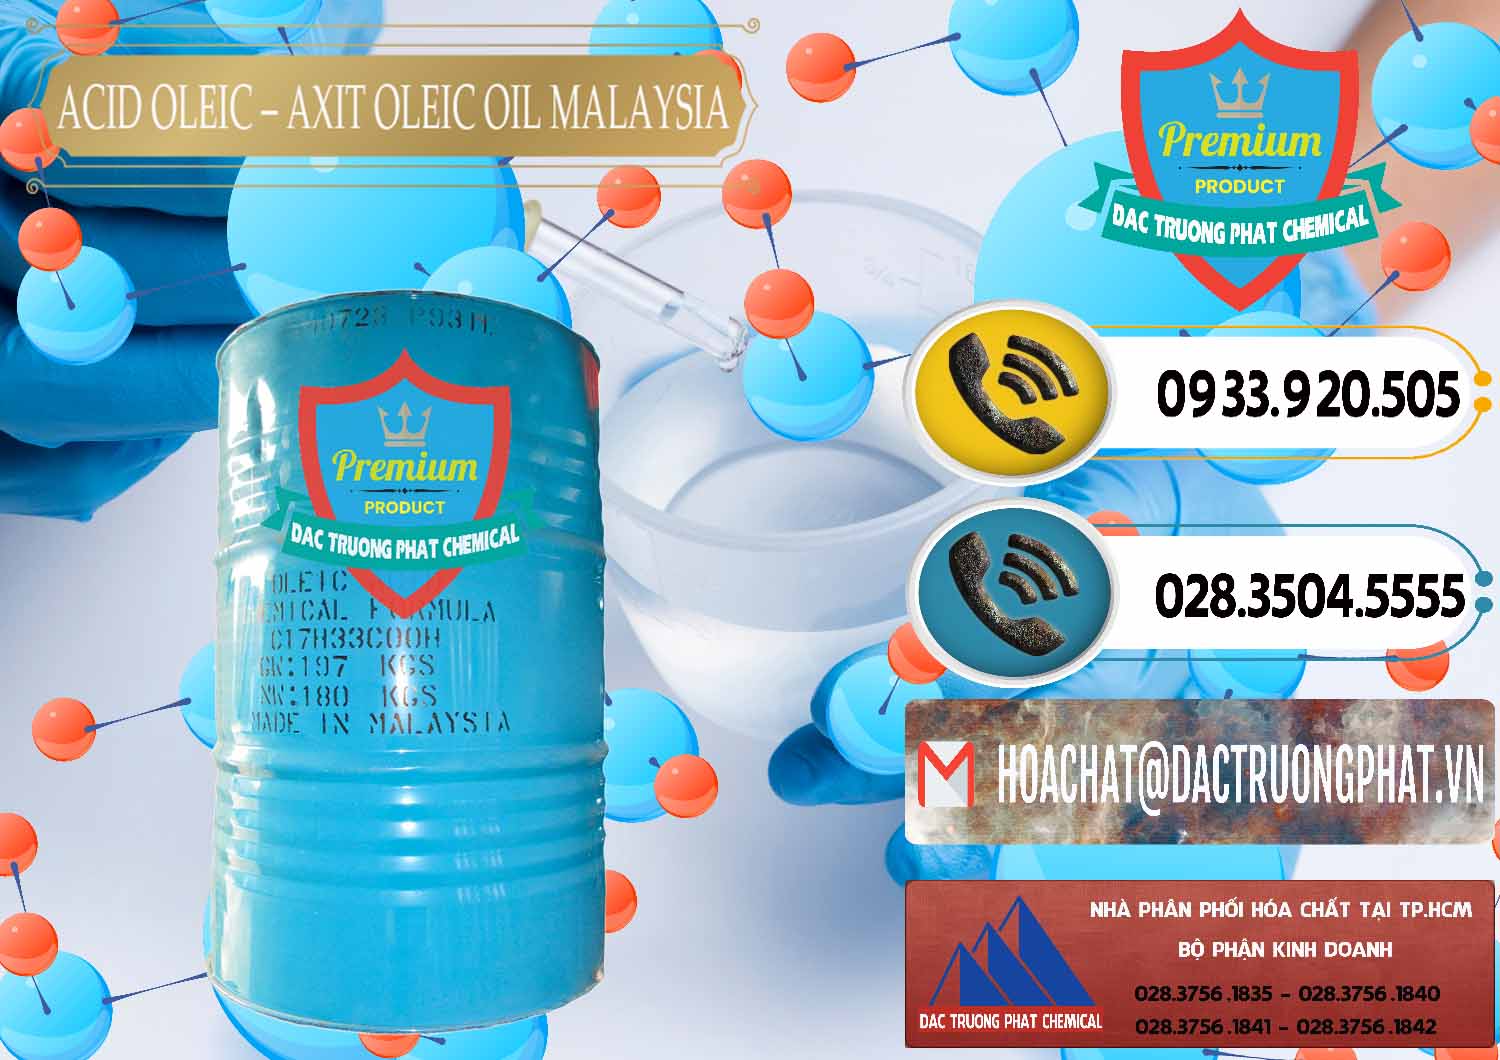 Công ty chuyên kinh doanh và bán Acid Oleic – Axit Oleic Oil Malaysia - 0013 - Phân phối ( kinh doanh ) hóa chất tại TP.HCM - hoachatdetnhuom.vn